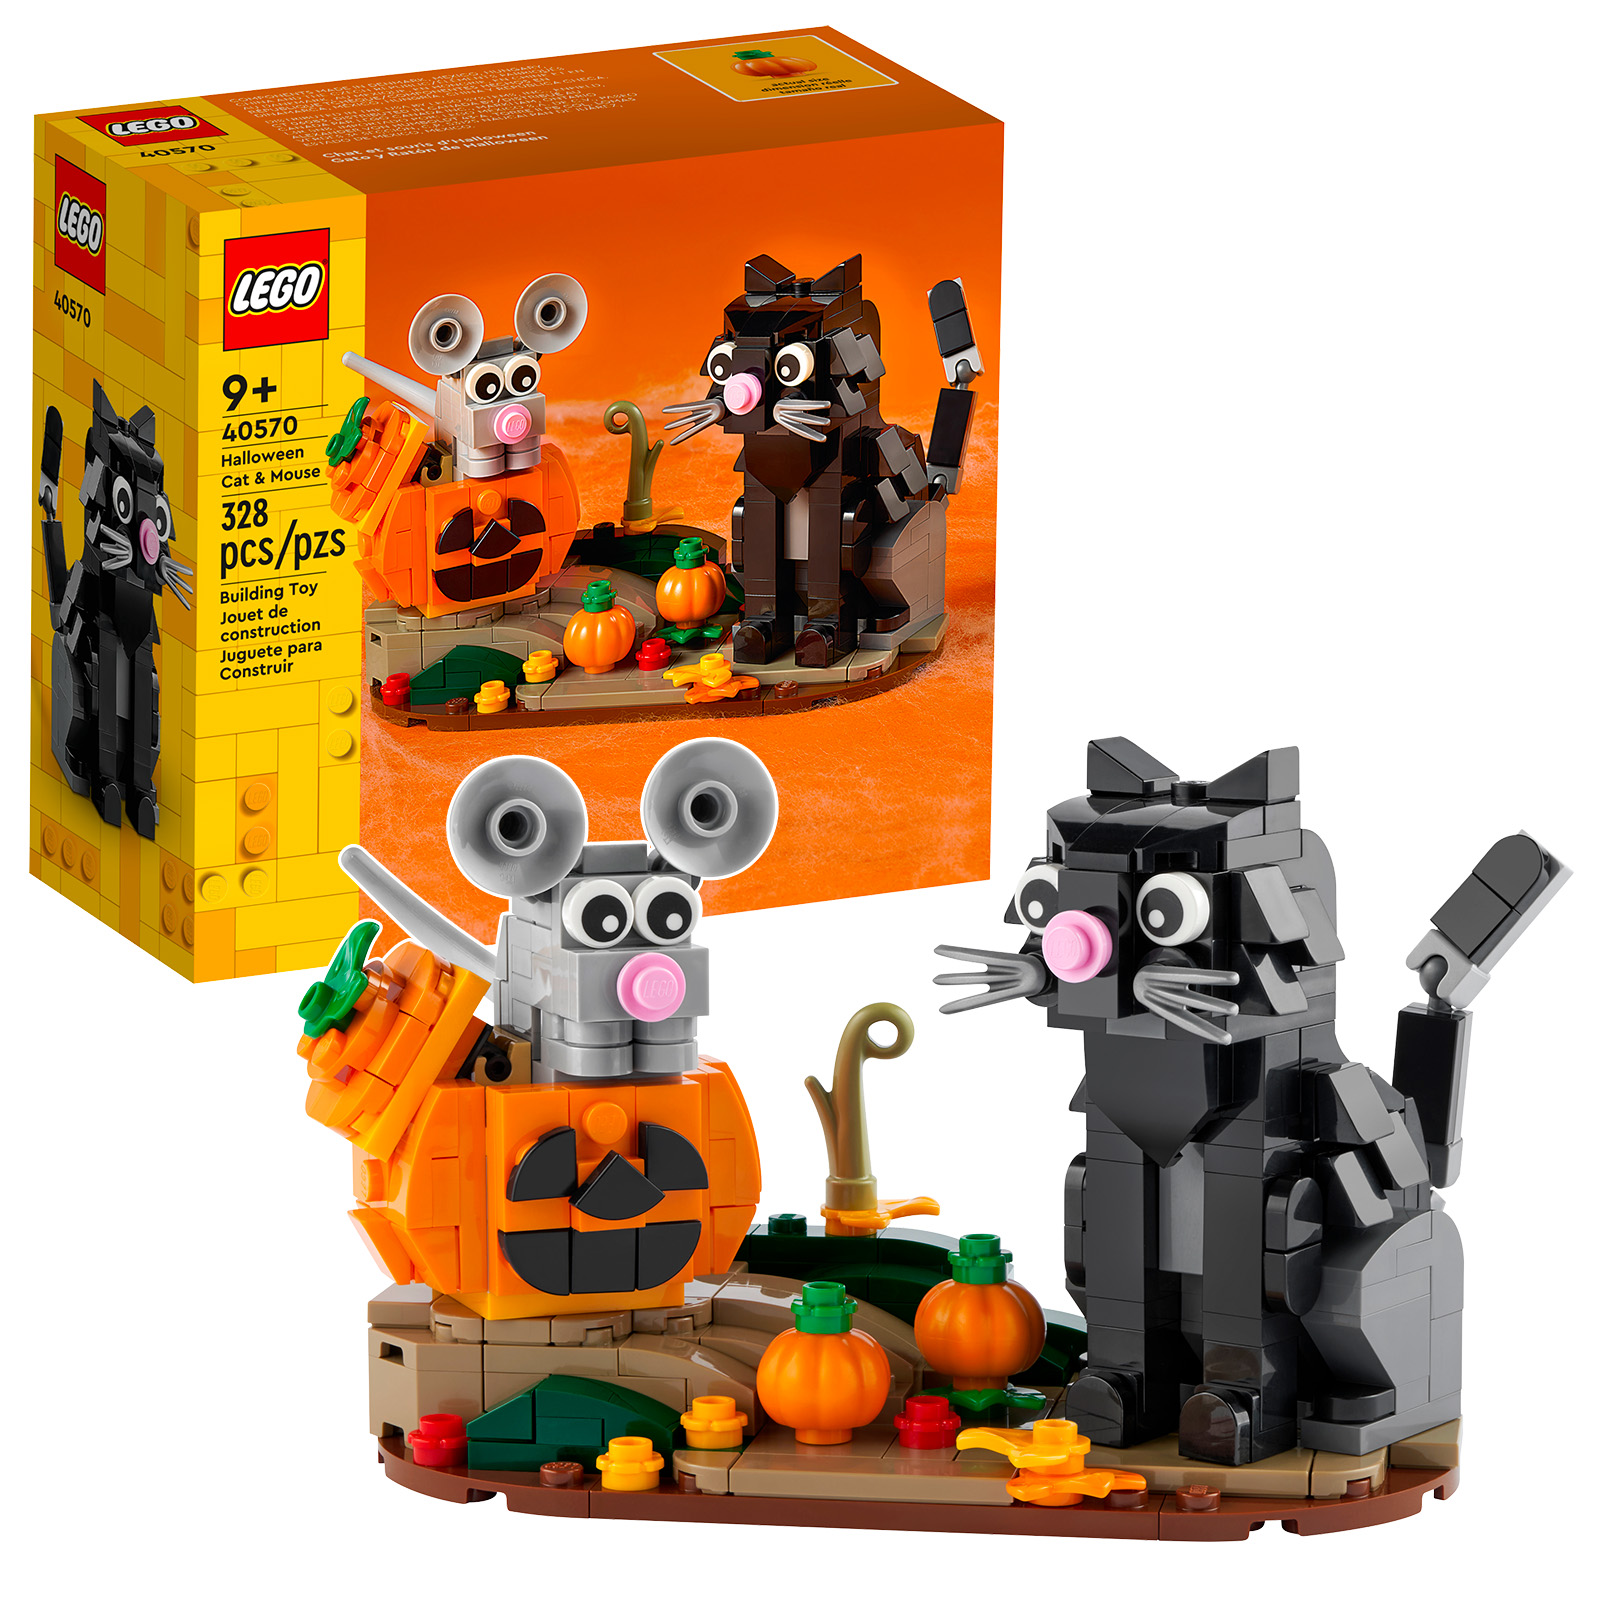 C'est bientôt Halloween : le set 40570 Halloween Cat & Mouse est en ligne sur le Shop